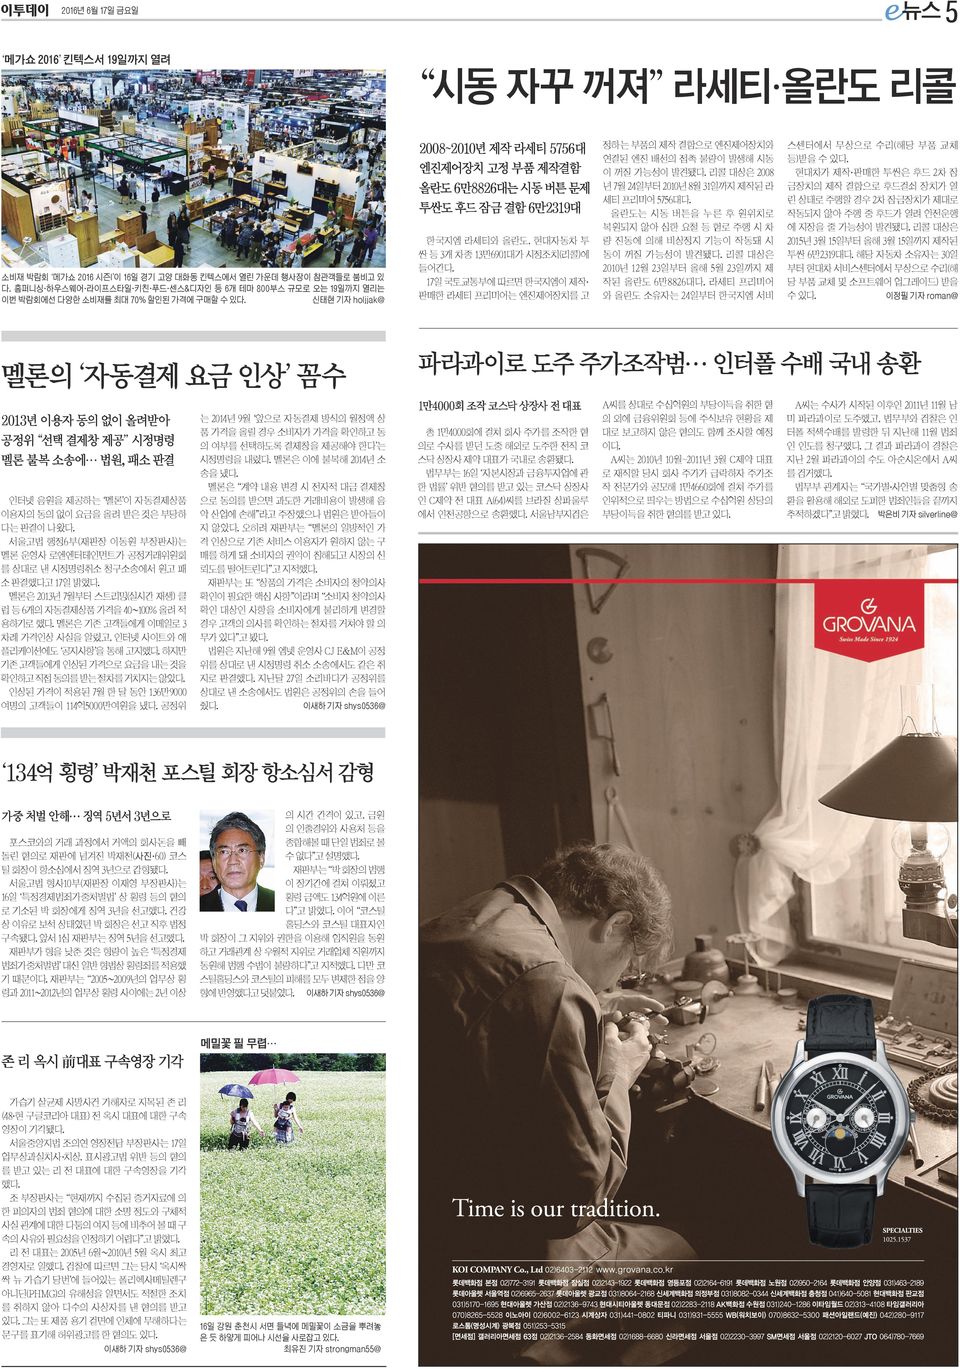 17일 국토교통부에 따르면 한국지엠이 제작 판매한 라세티 프리미어는 엔진제어장치를 고 인터넷 음원을 제공하는 멜론 이 자동결제상품 이용자의 동의 없이 요금을 올려 받은 것은 부당하 다는 판결이 나왔다.